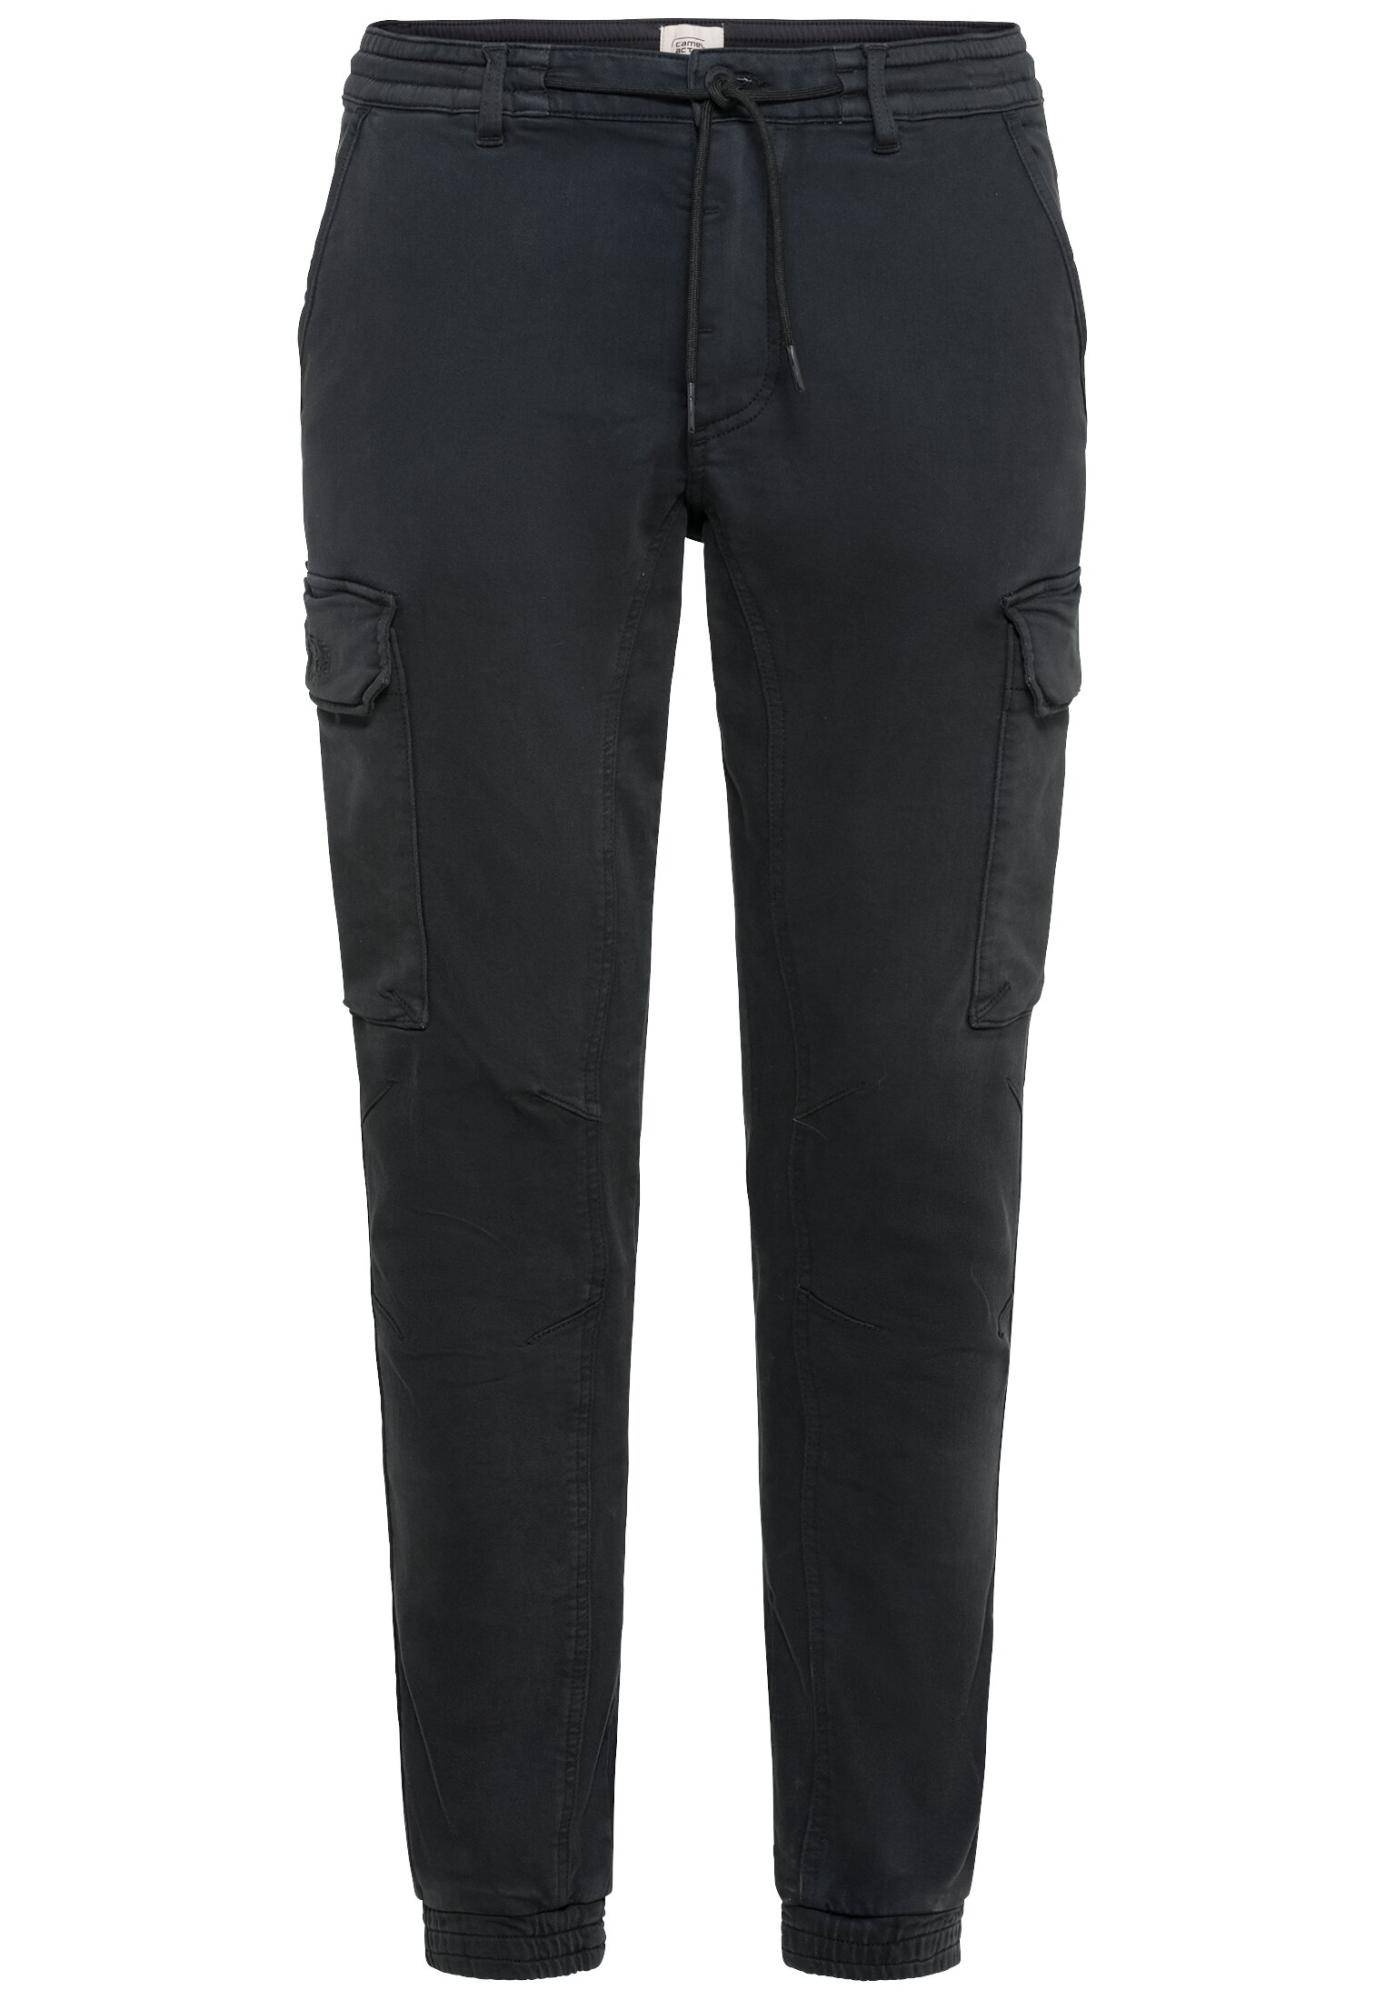 Мужские брюки Camel Active, серые, цвет серый, размер 36 - фото 1